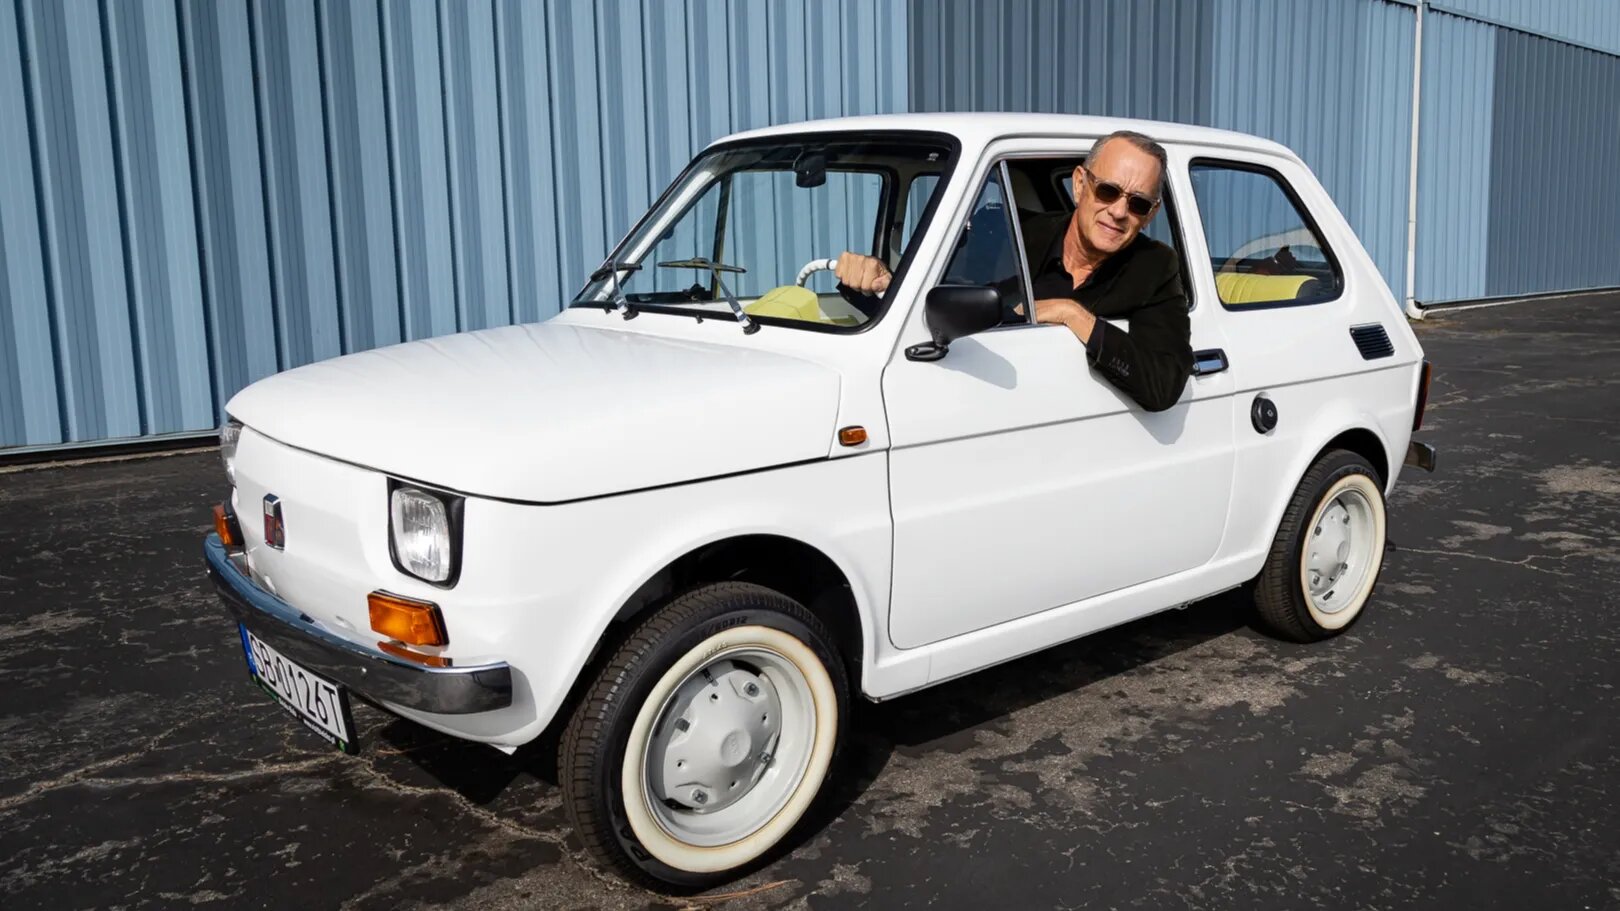 Том Хэнкс выставил на аукцион старый маленький Fiat: за него уже дают 55 555 долларов